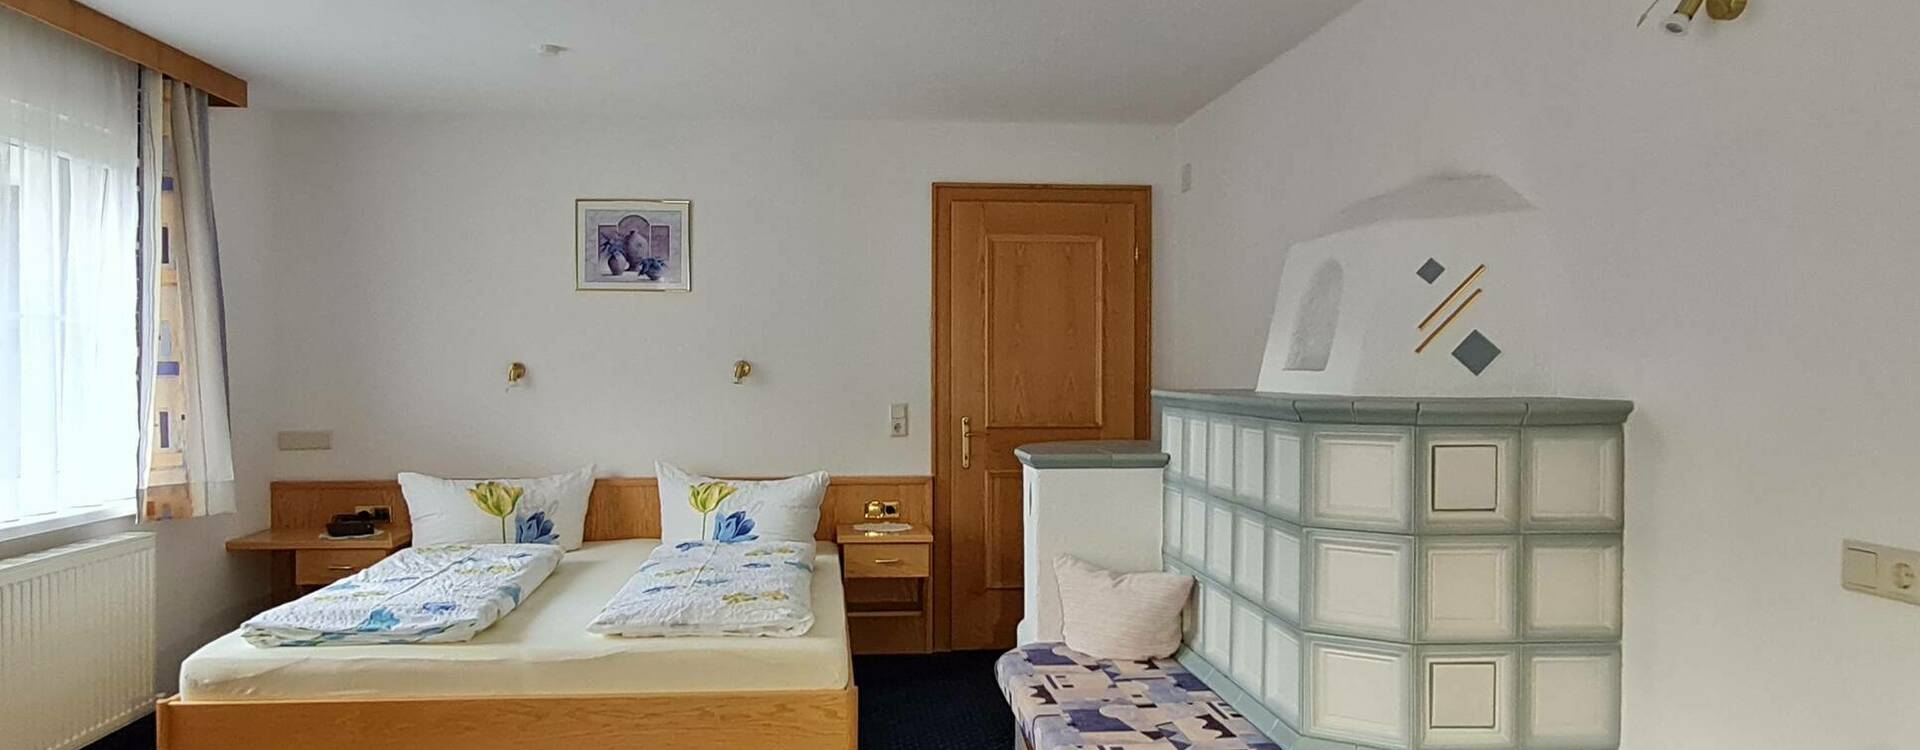  Schlafzimmer Apartment 4 - Apart Hosp Ischgl